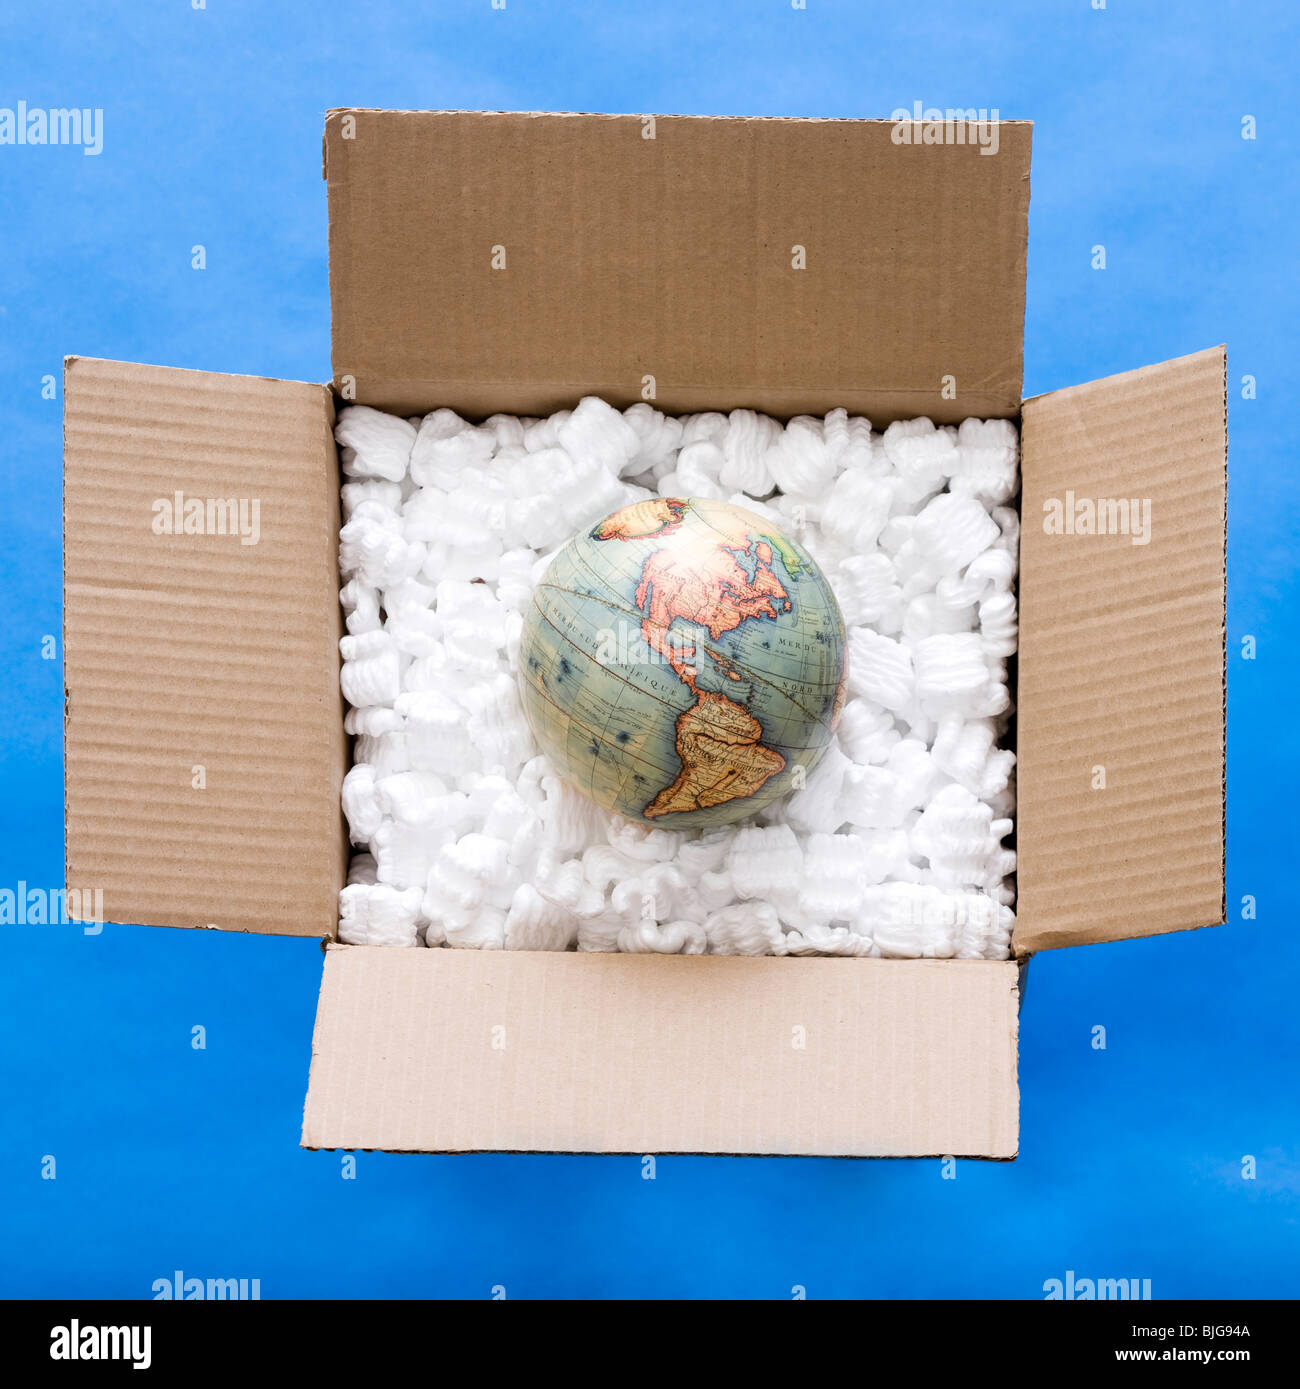 Globus in eine Kiste voll von Verpackungsmaterial Stockfotografie - Alamy